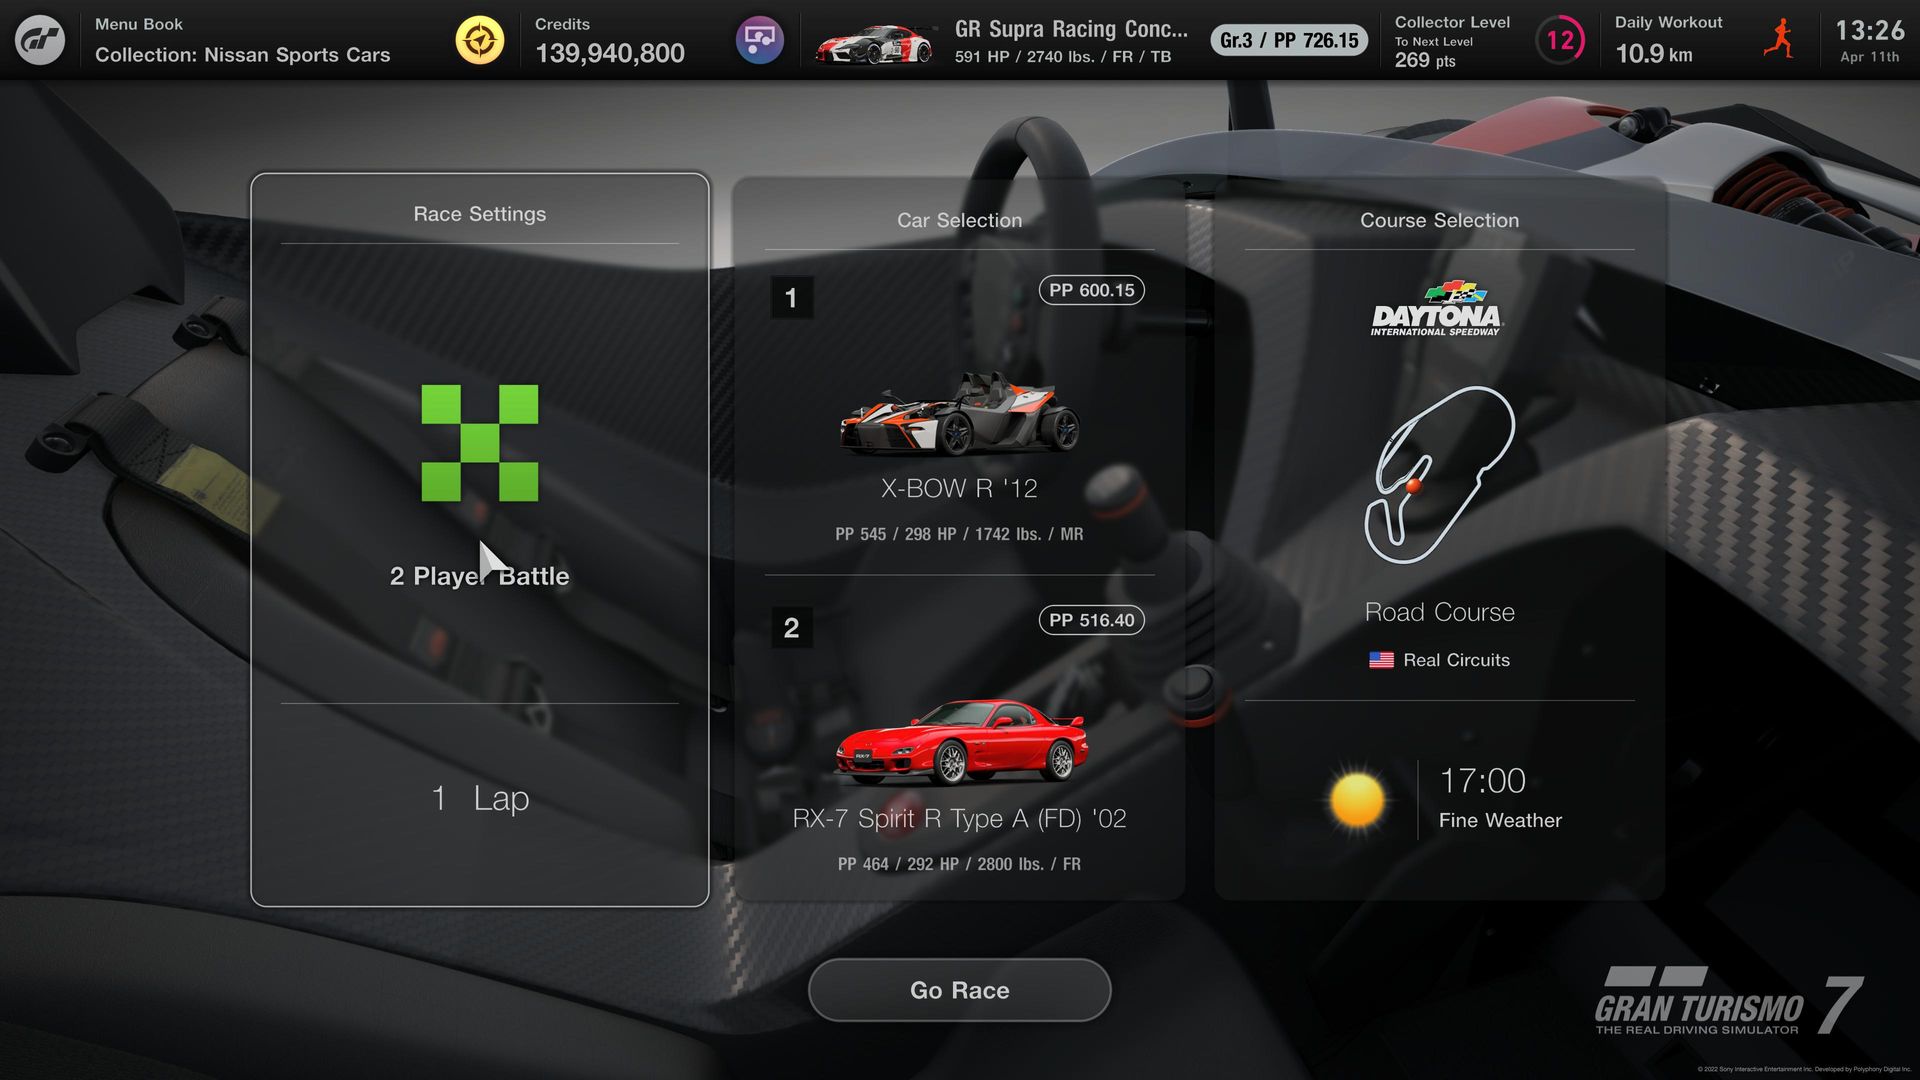 Gran Turismo 7 - Todas as novidades - carros, pistas, modos de jogo,  multijogador, funcionalidades PS5